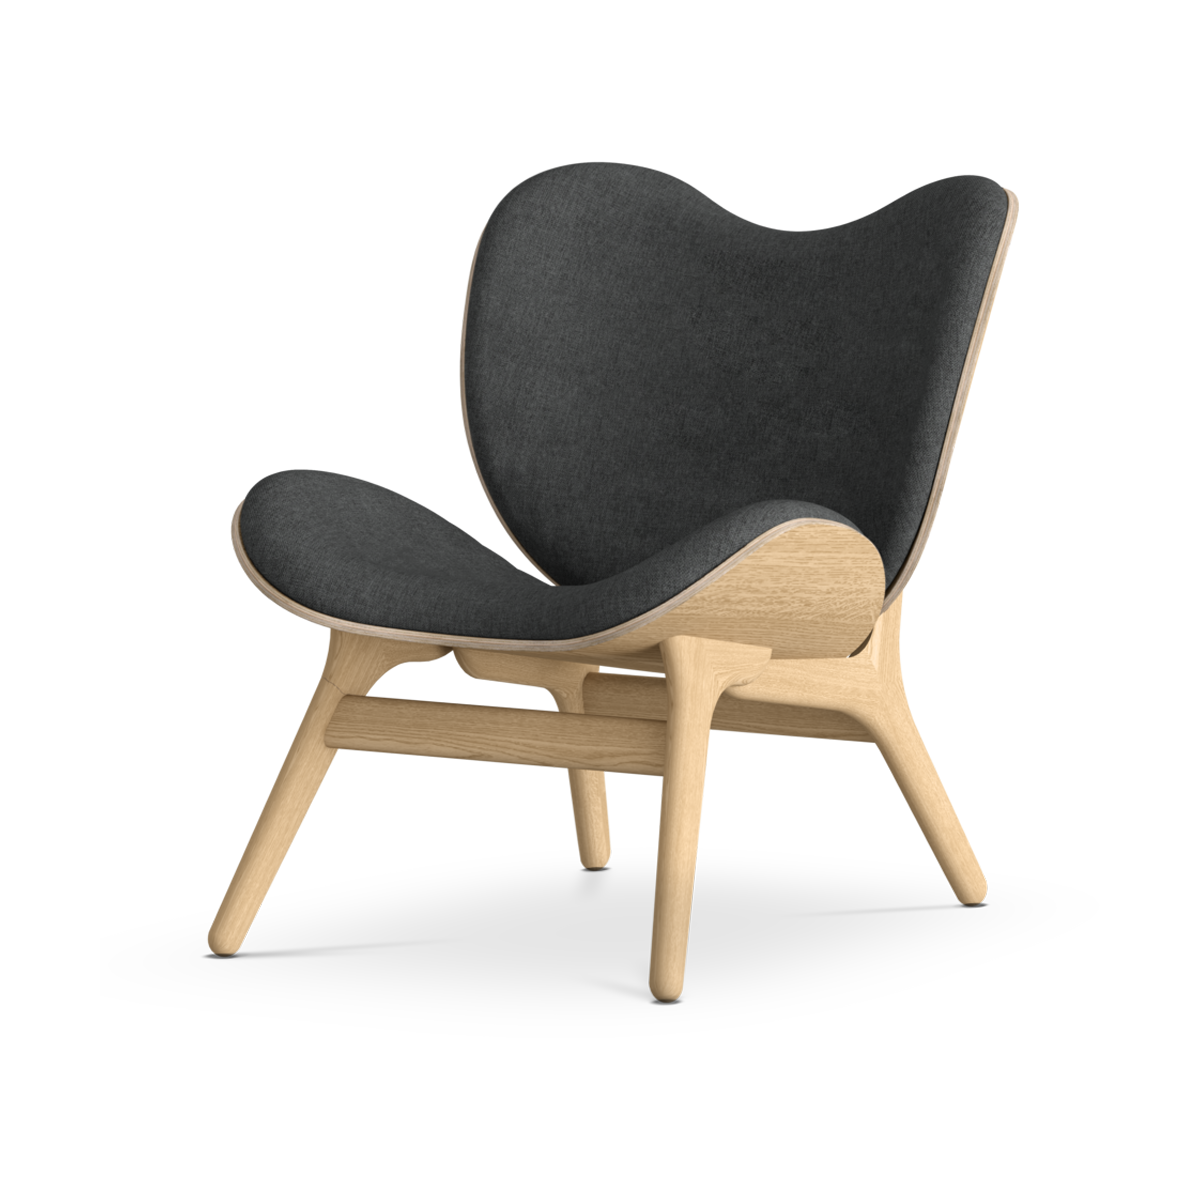 A Conversation Piece naturel houten fauteuil Shadow